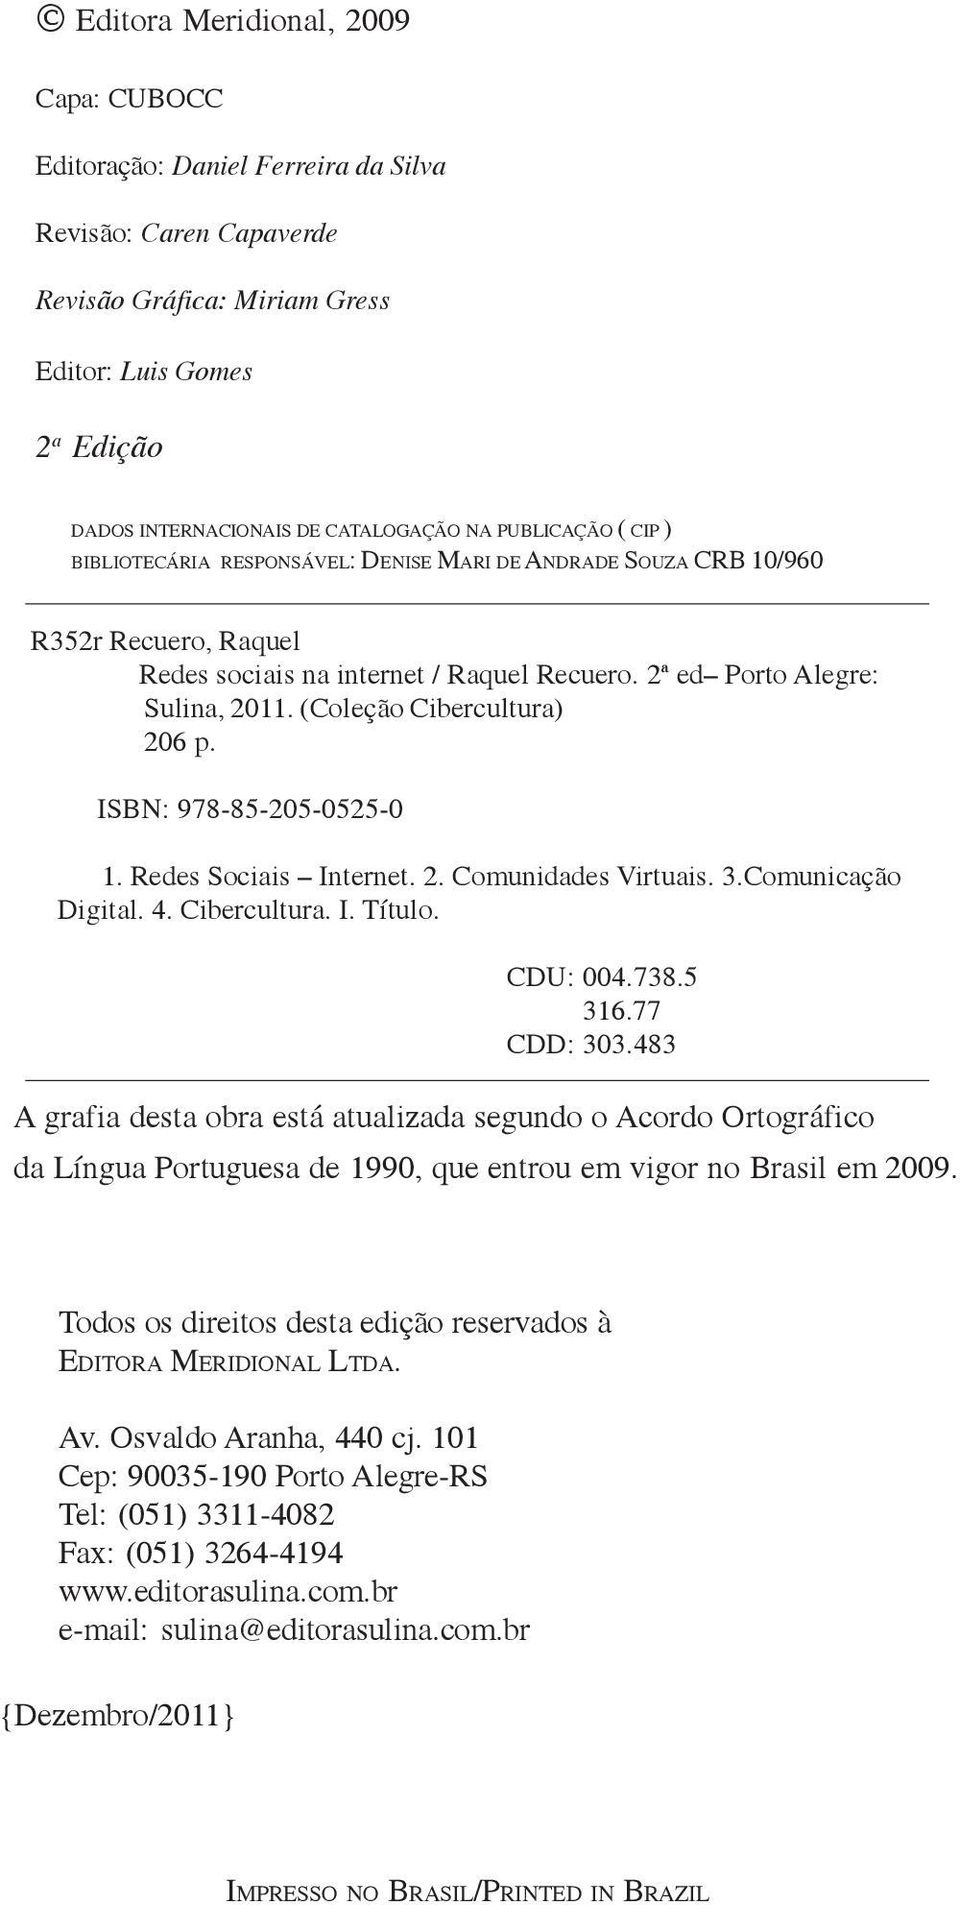 (Coleção Cibercultura) 206 p. ISBN: 978-85-205-0525-0 1. Redes Sociais Internet. 2. Comunidades Virtuais. 3.Comunicação Digital. 4. Cibercultura. I. Título. CDU: 004.738.5 316.77 CDD: 303.